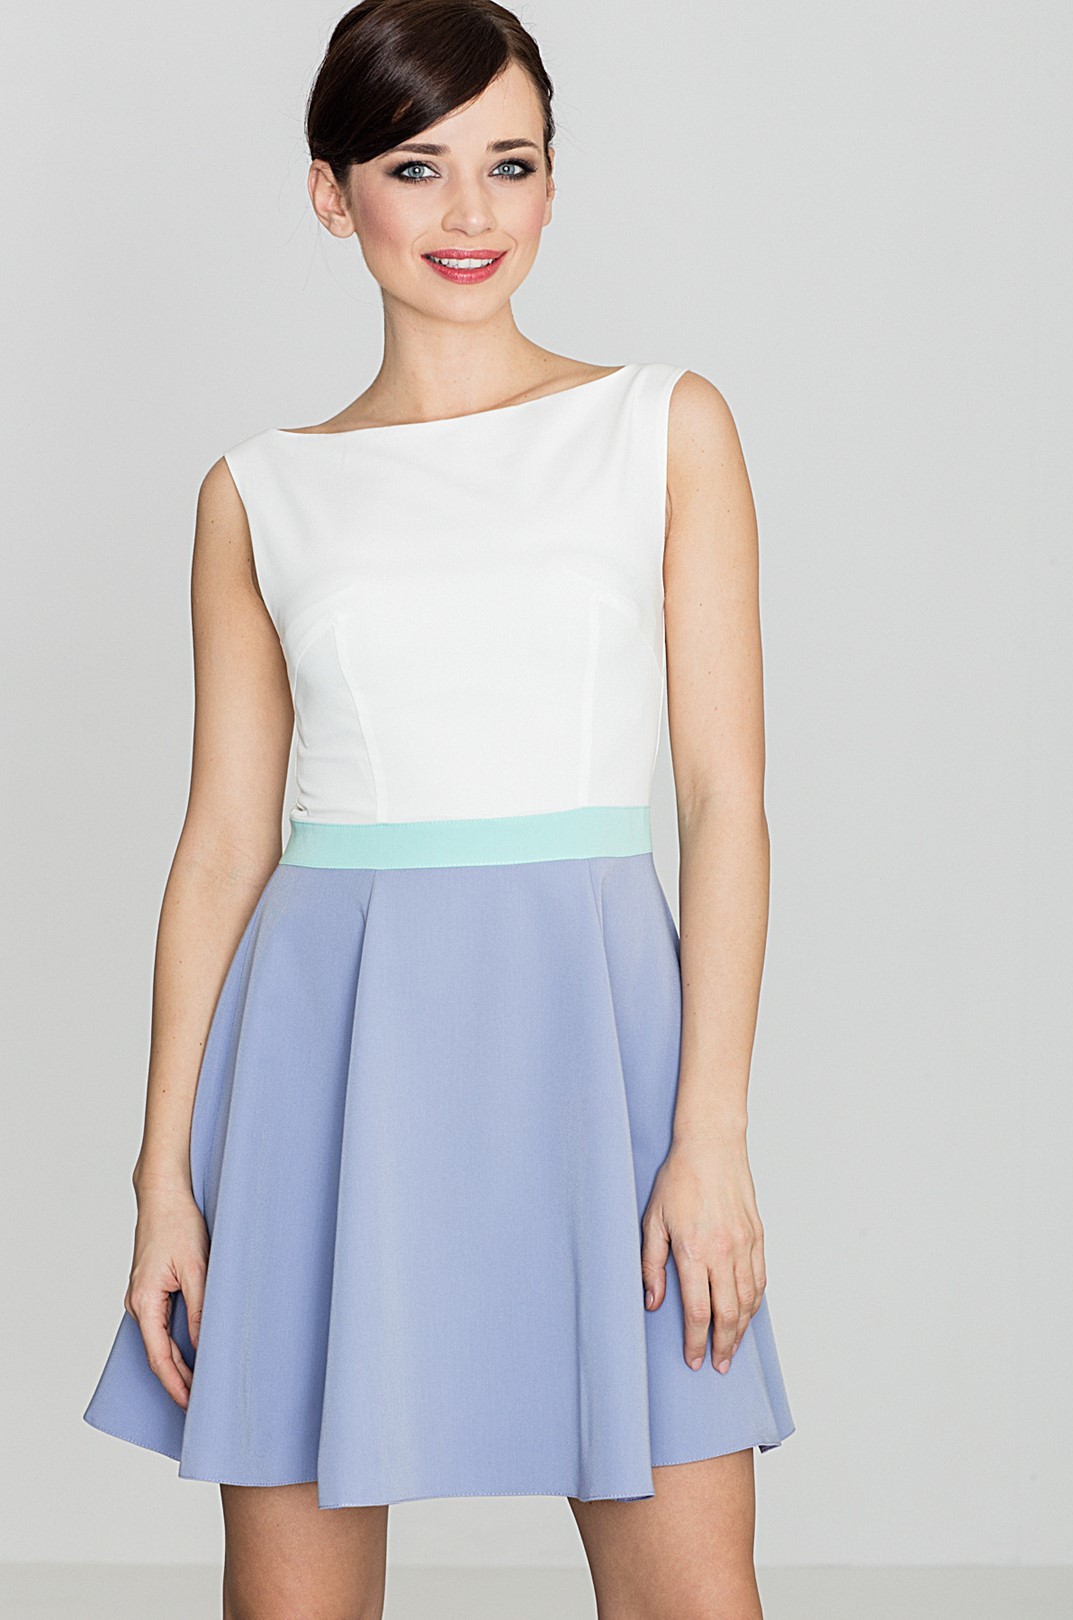 Bílé šaty s fialovou sukní K083 Velikost: M